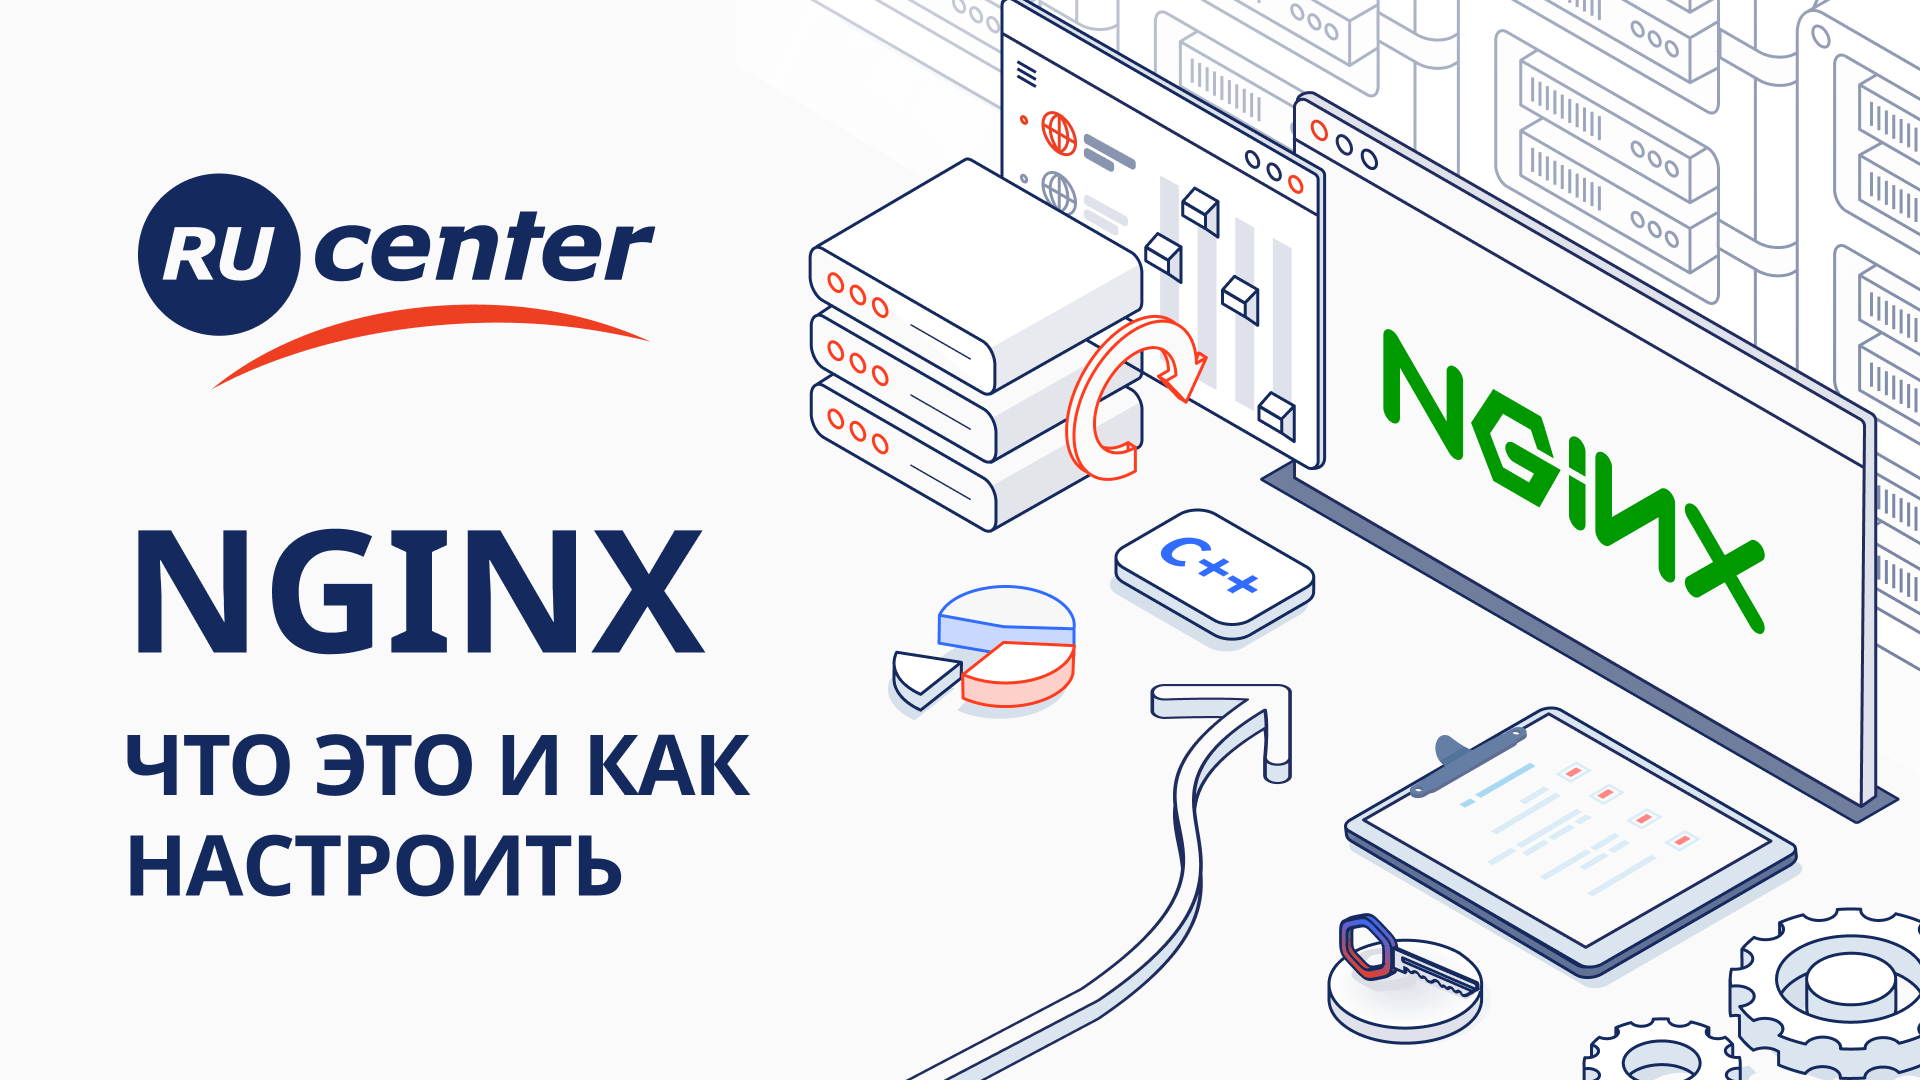 Что такое Nginx и как правильно его настроить?